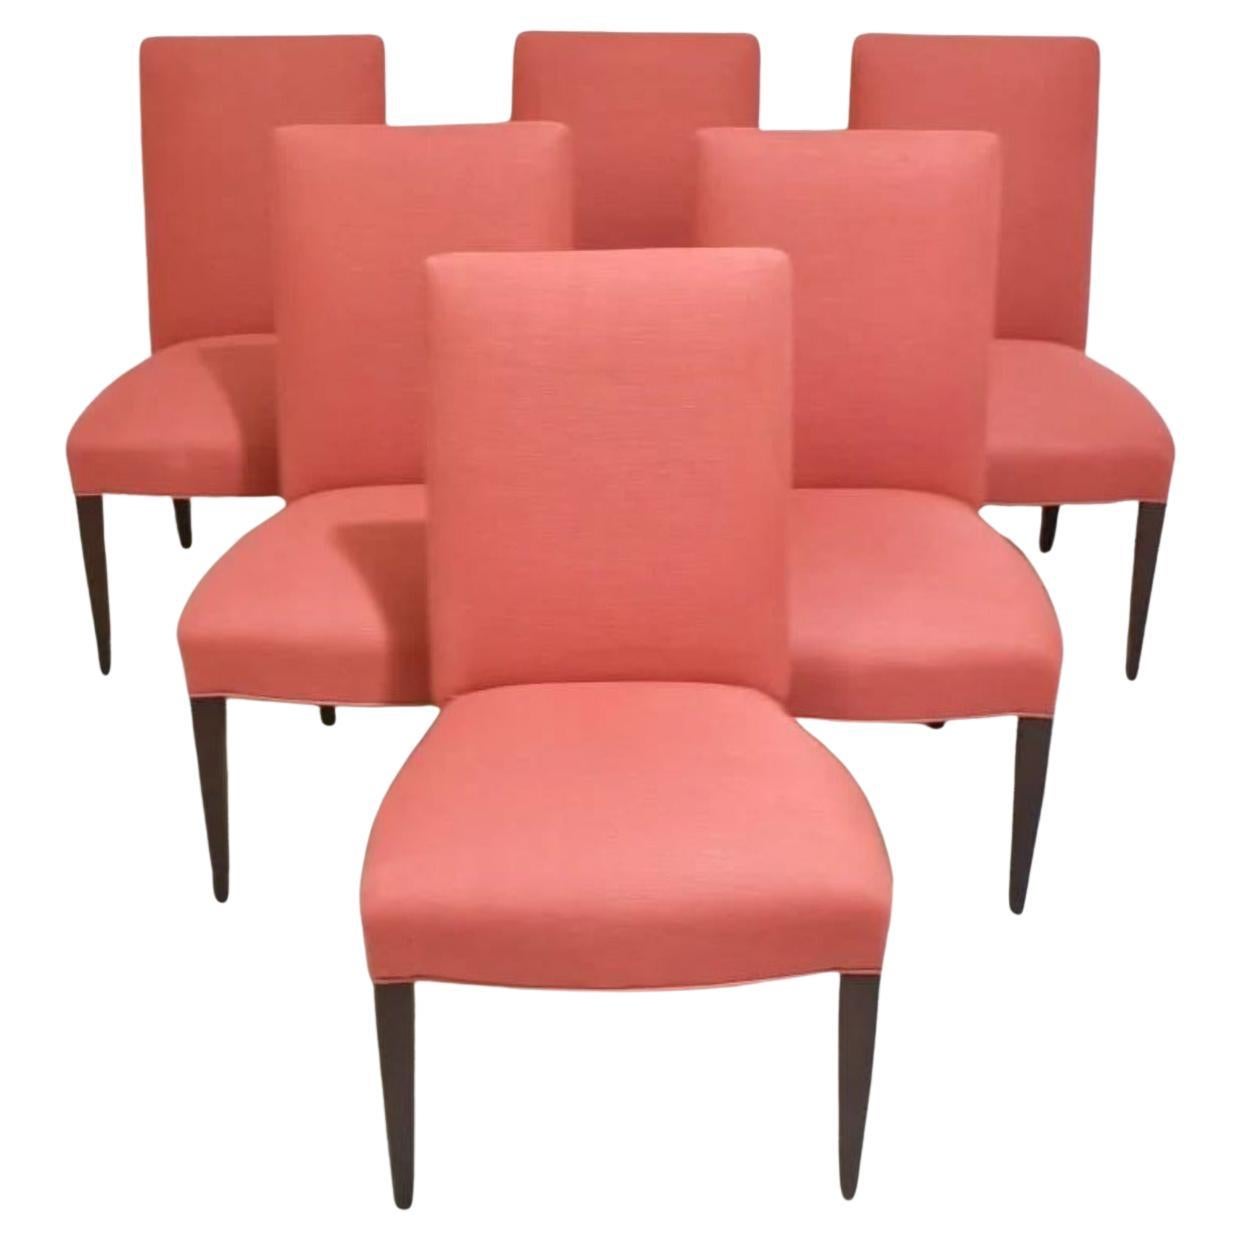 Suite de six superbes chaises de salle à manger classiques entièrement rembourrées